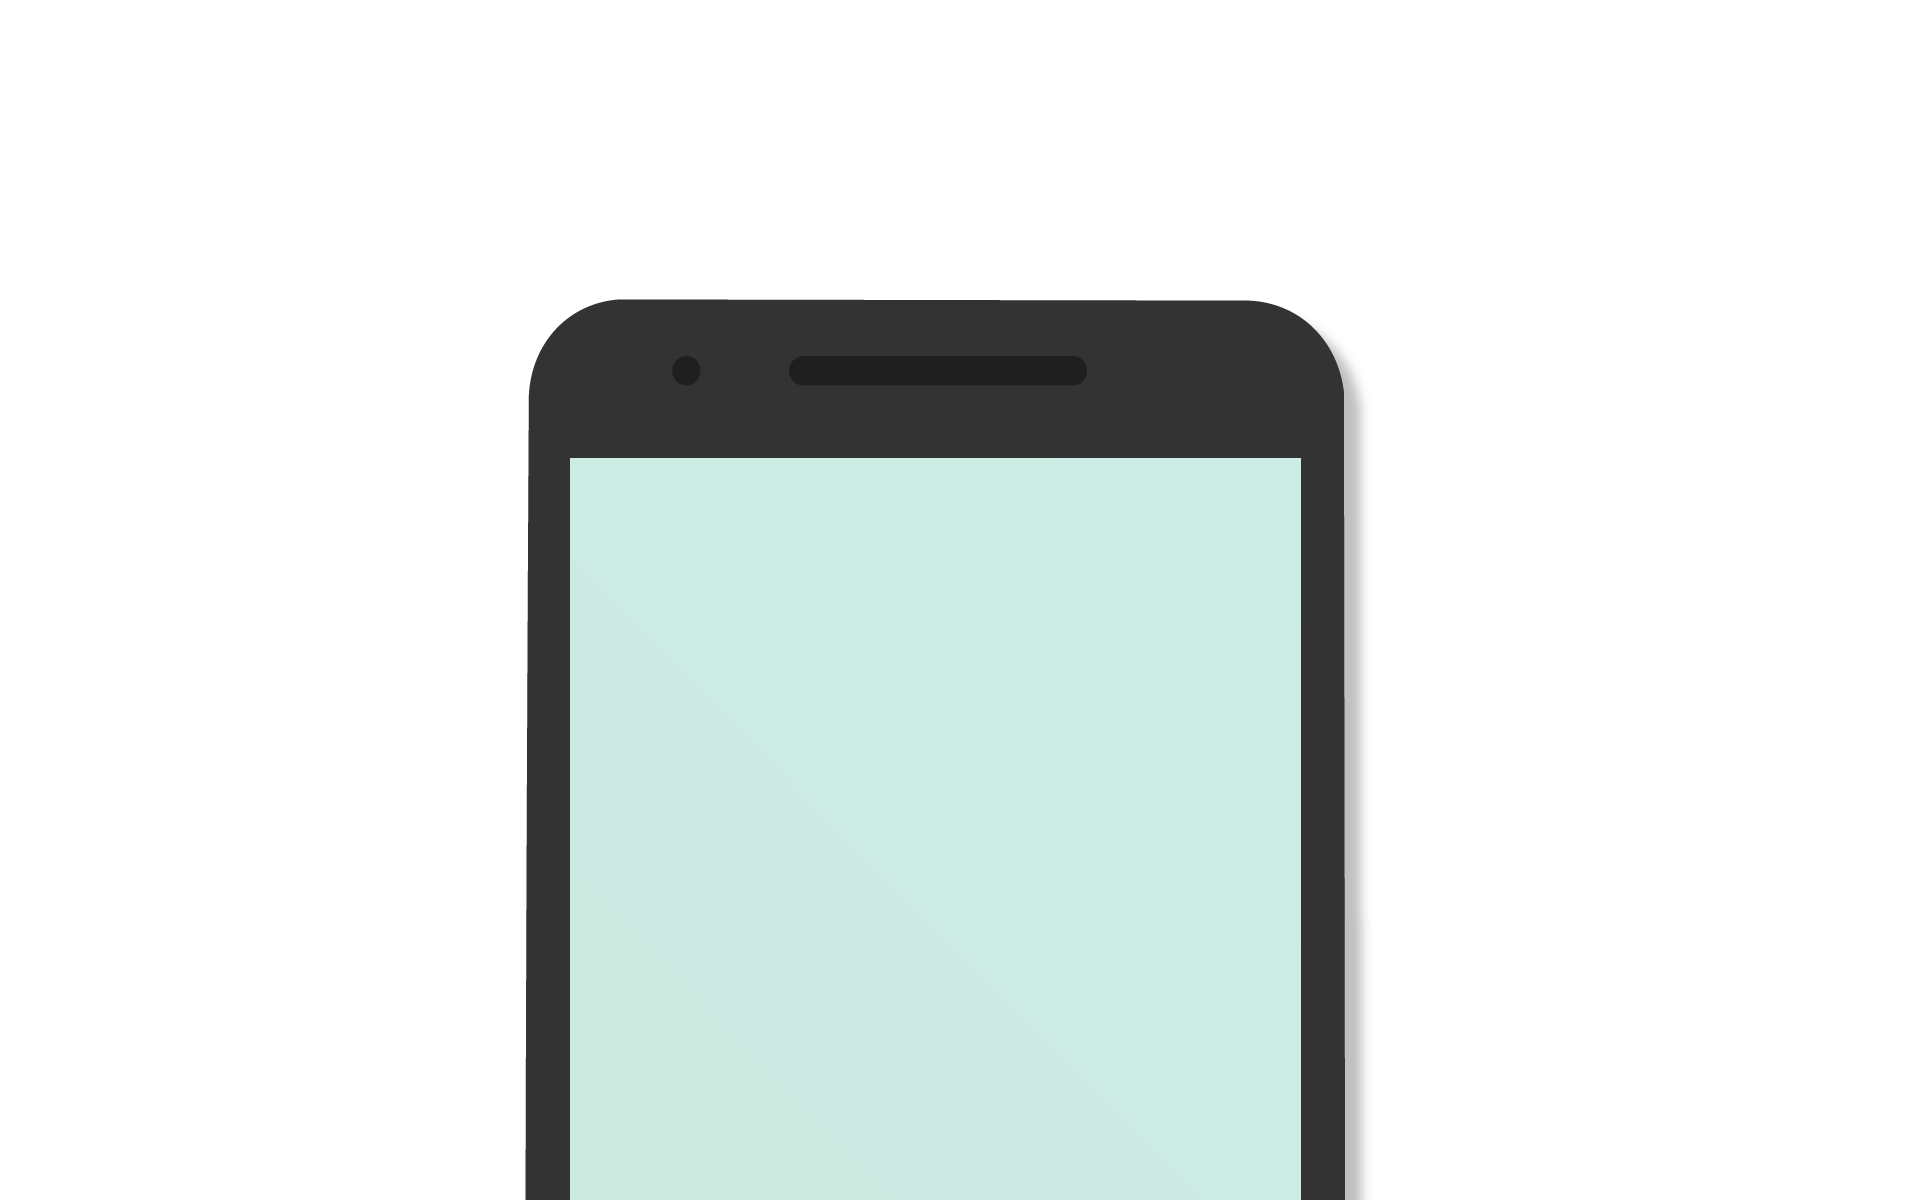 Fortuno disponível para celulares androids na Google Play